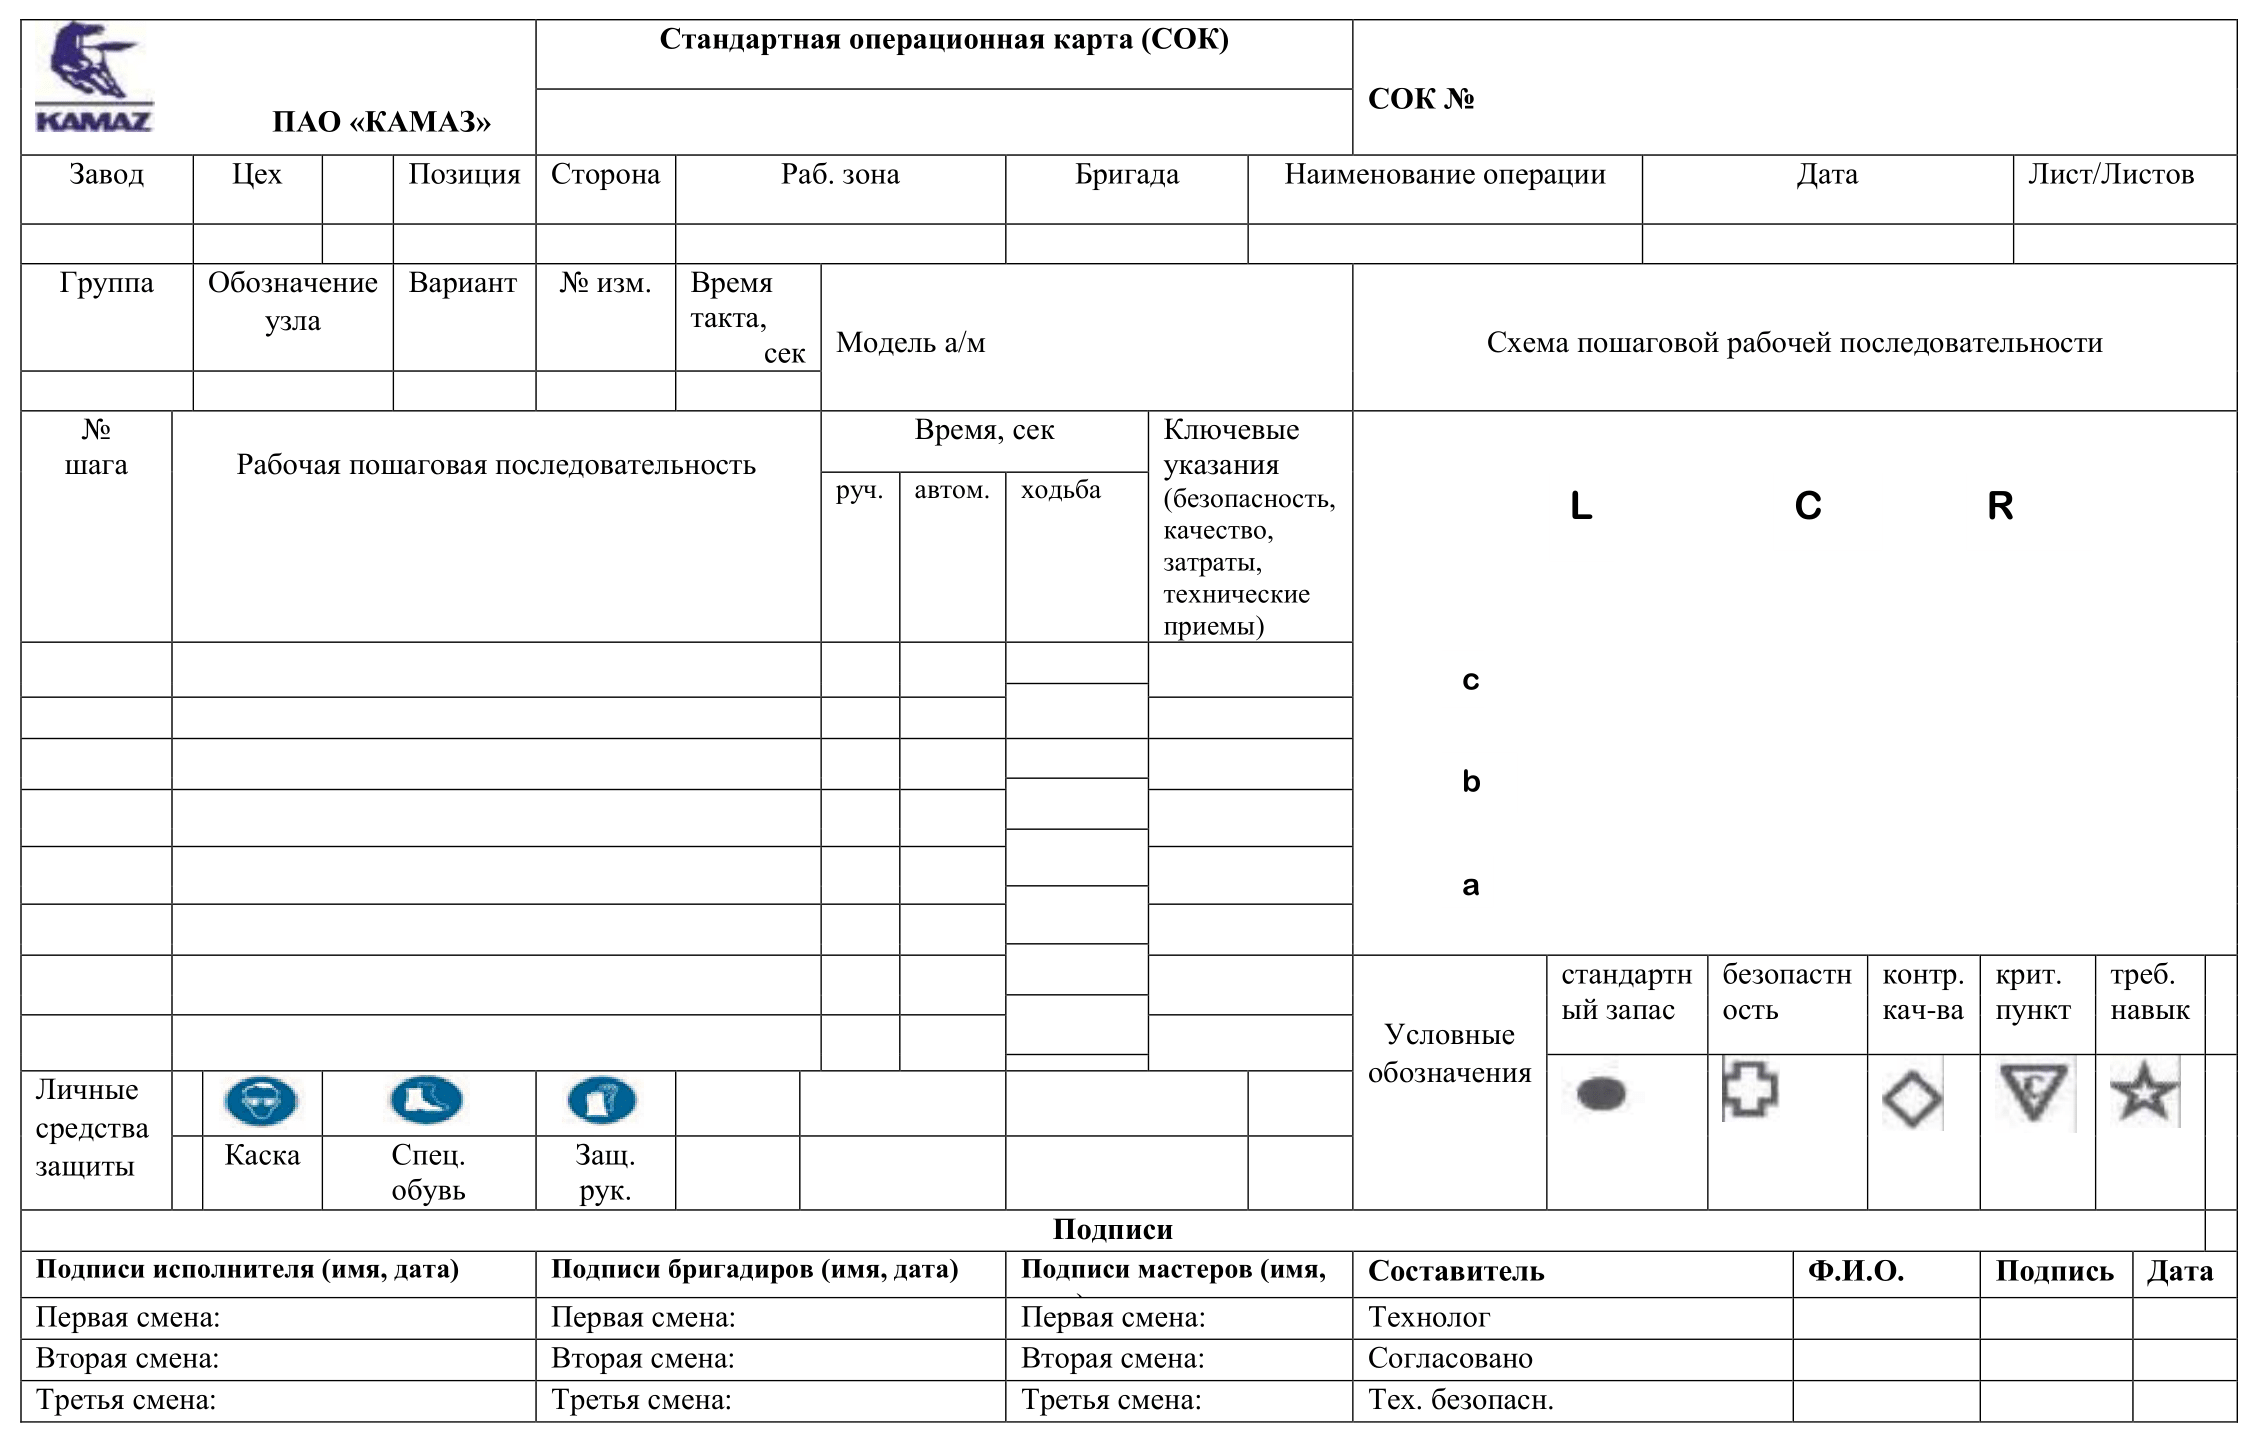 Бланк стандартной операционной карты (СОК) структурного подразделения ПАО «КАМАЗ»